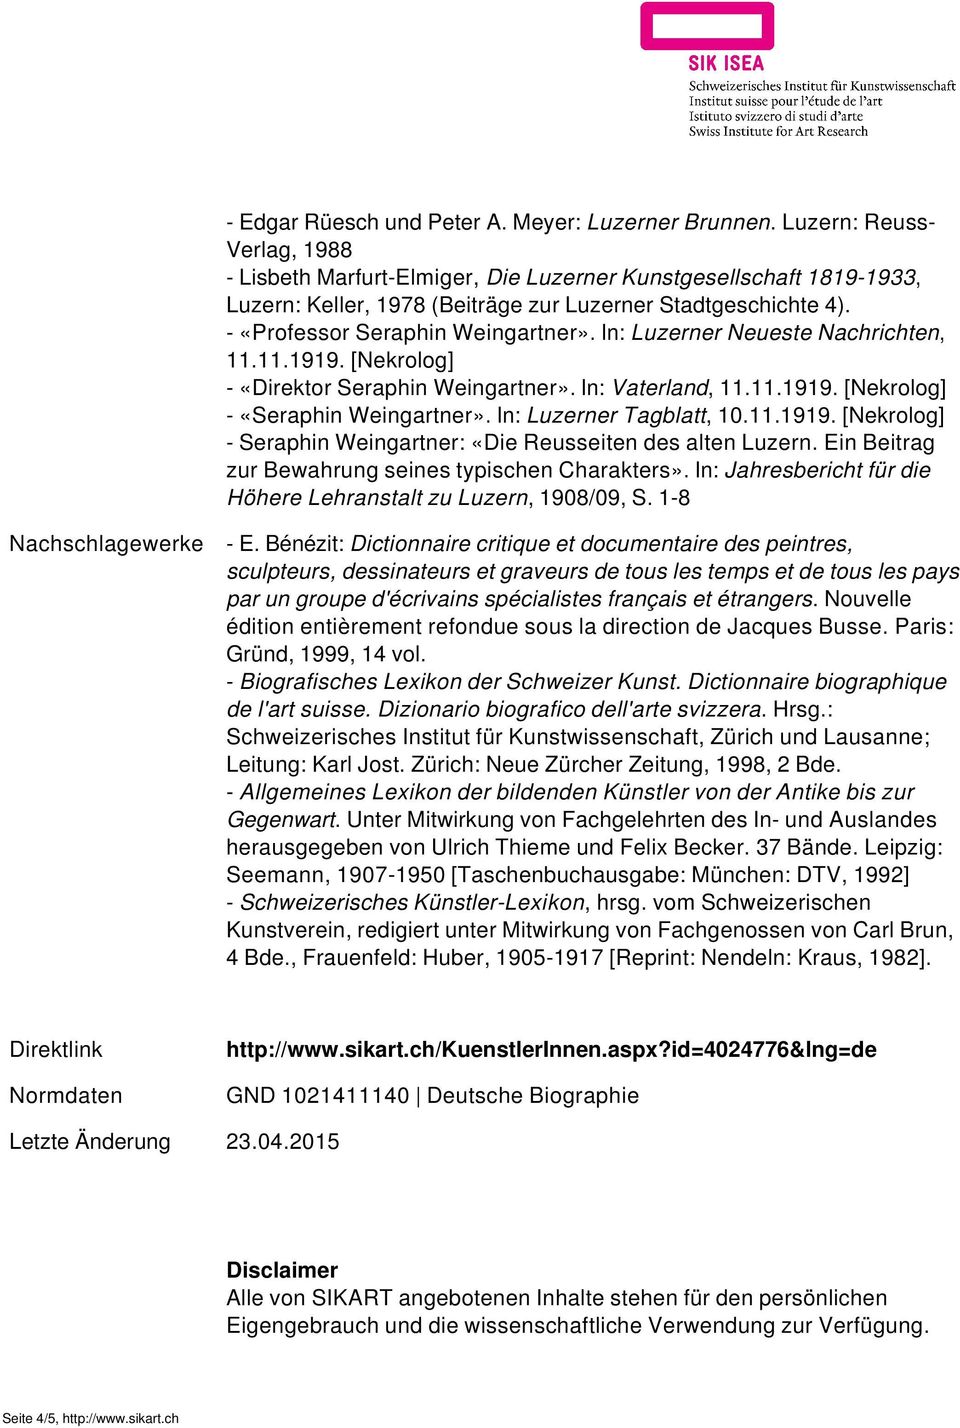 In: Luzerner Neueste Nachrichten, 11.11.1919. [Nekrolog] - «Direktor Seraphin Weingartner». In: Vaterland, 11.11.1919. [Nekrolog] - «Seraphin Weingartner». In: Luzerner Tagblatt, 10.11.1919. [Nekrolog] - Seraphin Weingartner: «Die Reusseiten des alten Luzern.